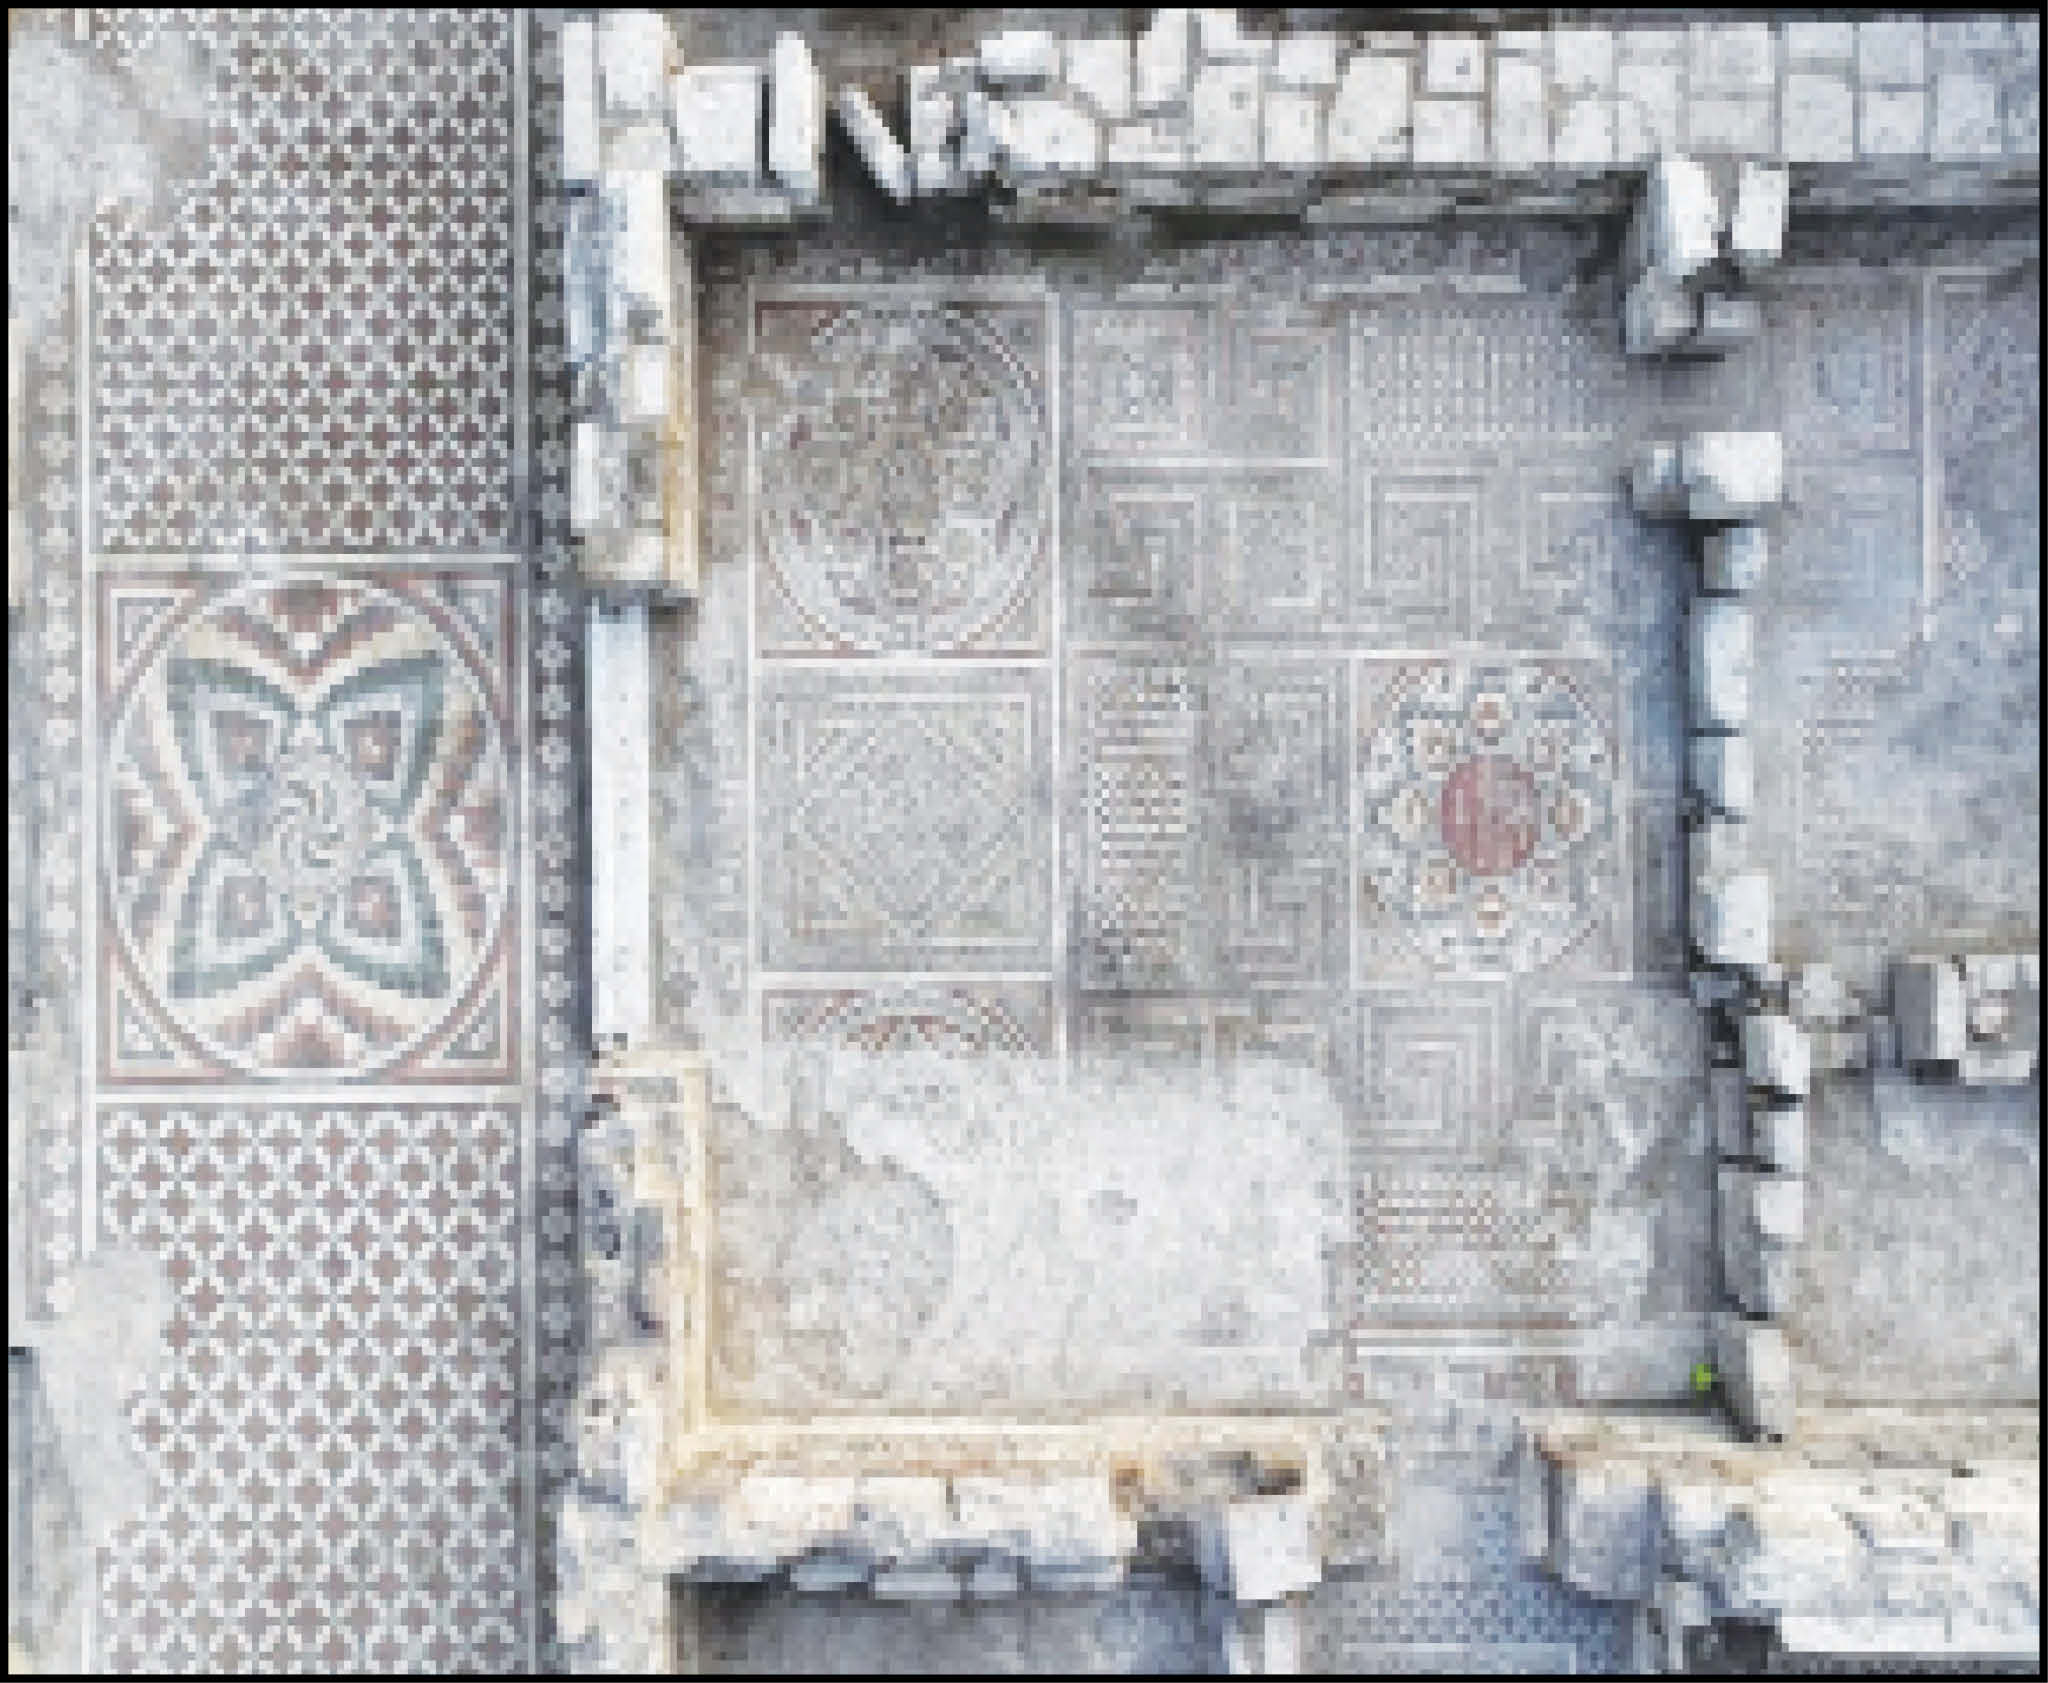 کشف ویلای قرن چهارمی با ۳۳ اتاق و کف موزاییکی